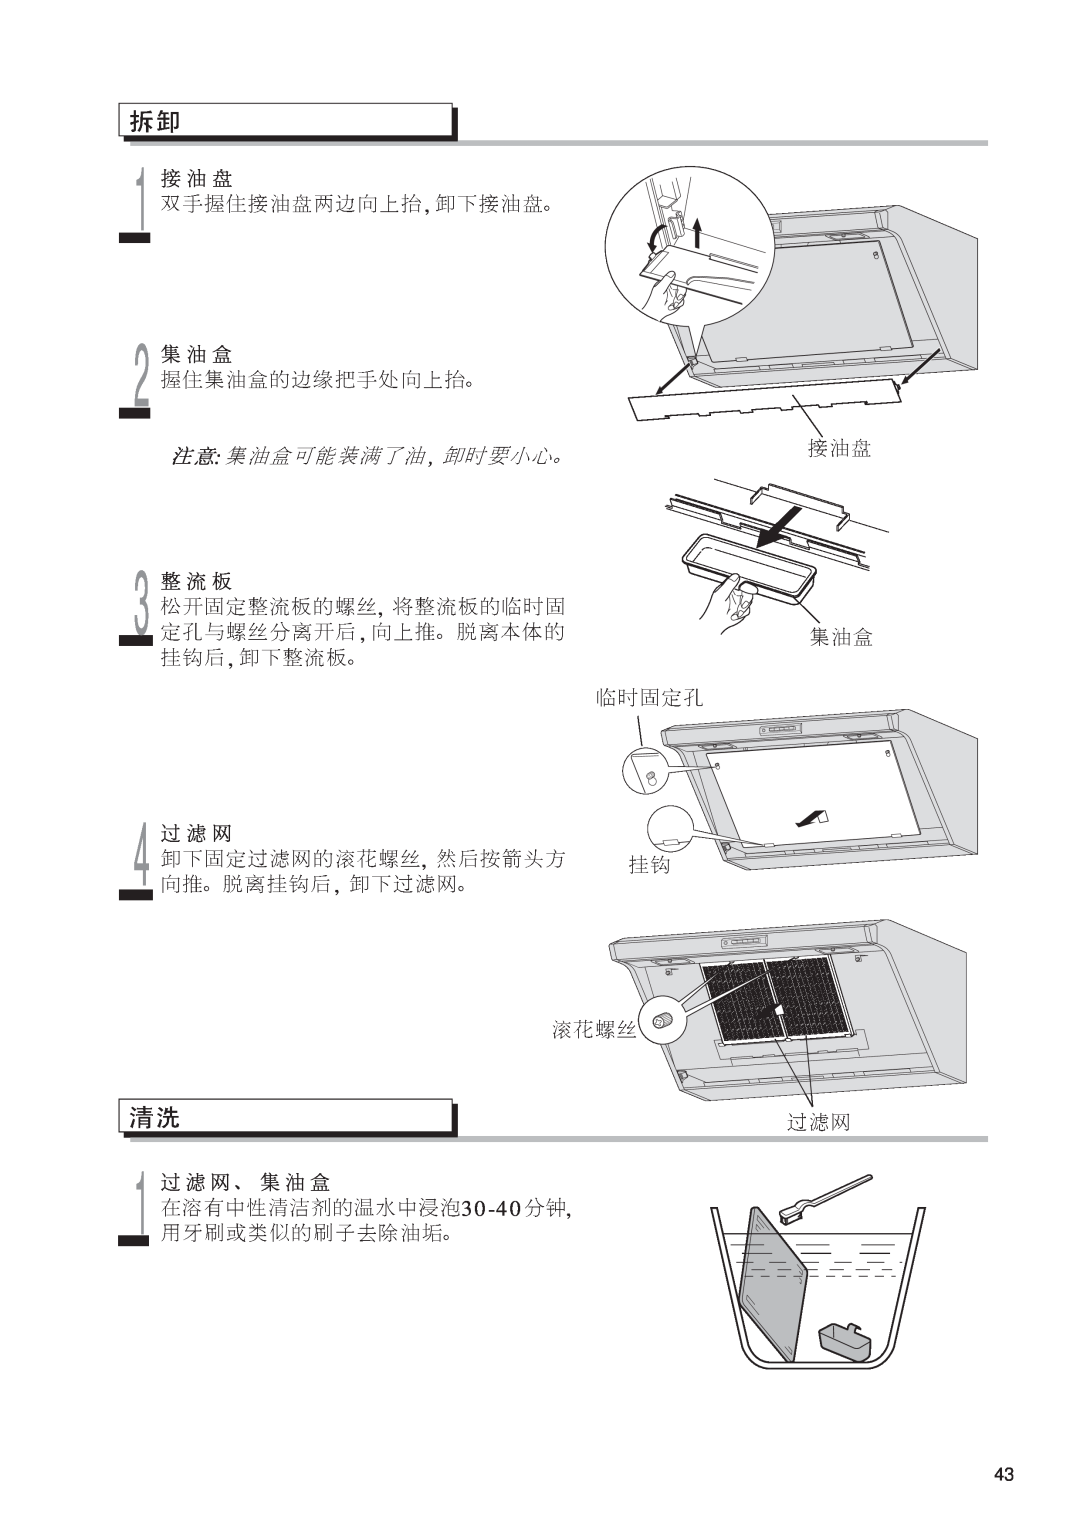 Fujioh FDR-4200D operation manual 130-40 